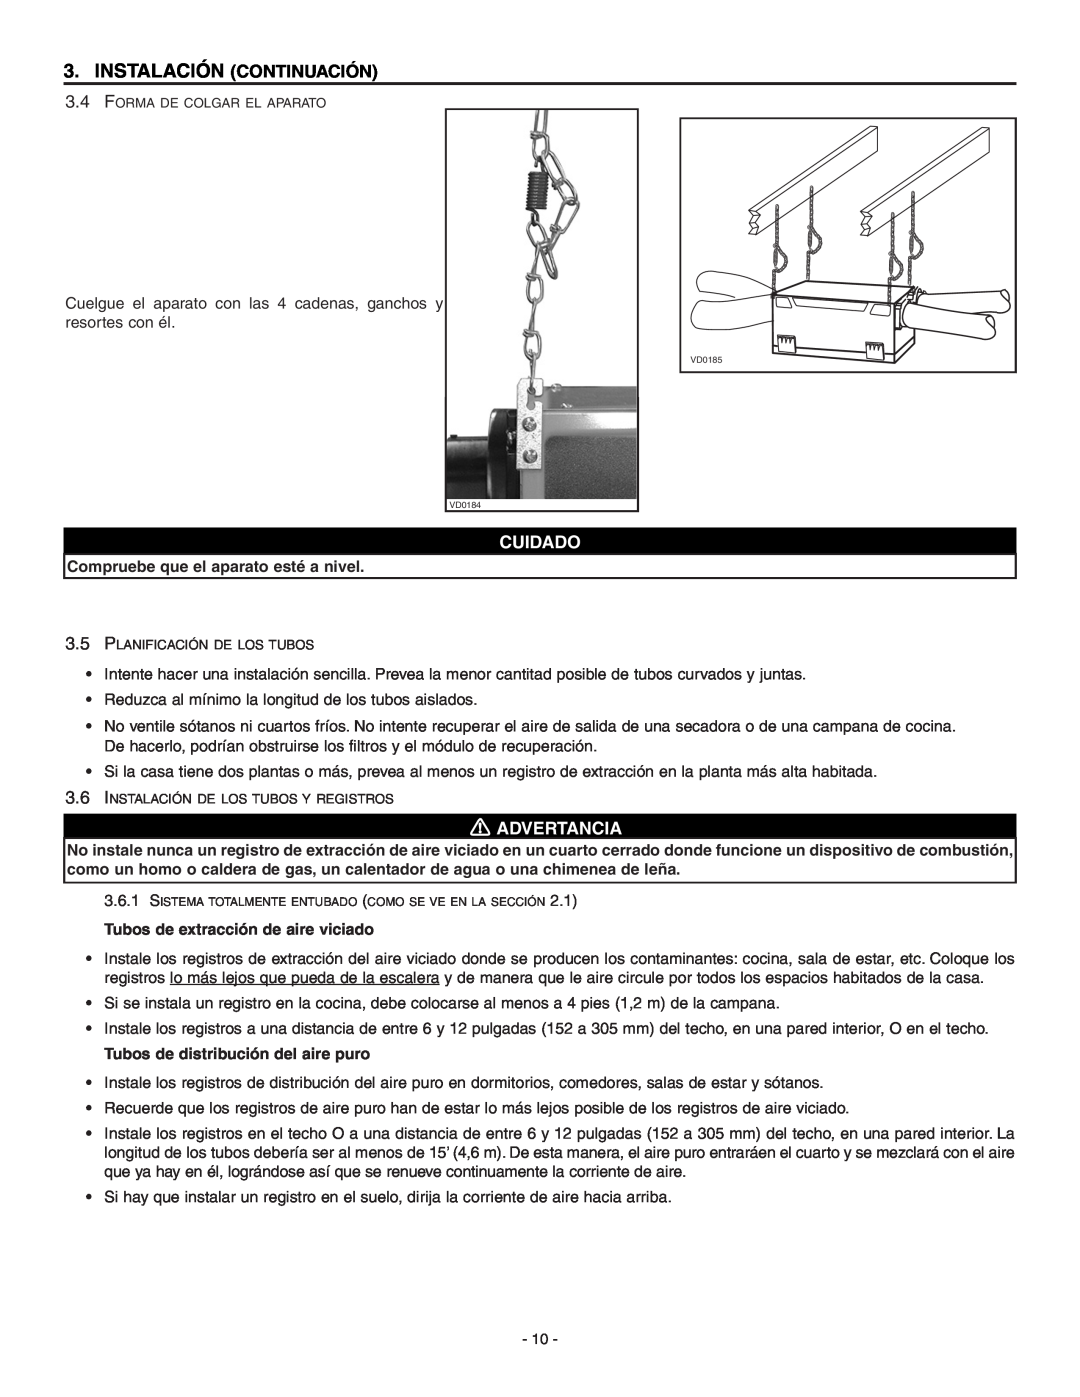 Broan ERV90HCT installation instructions Instalación Continuación, Cuidado, Advertancia 